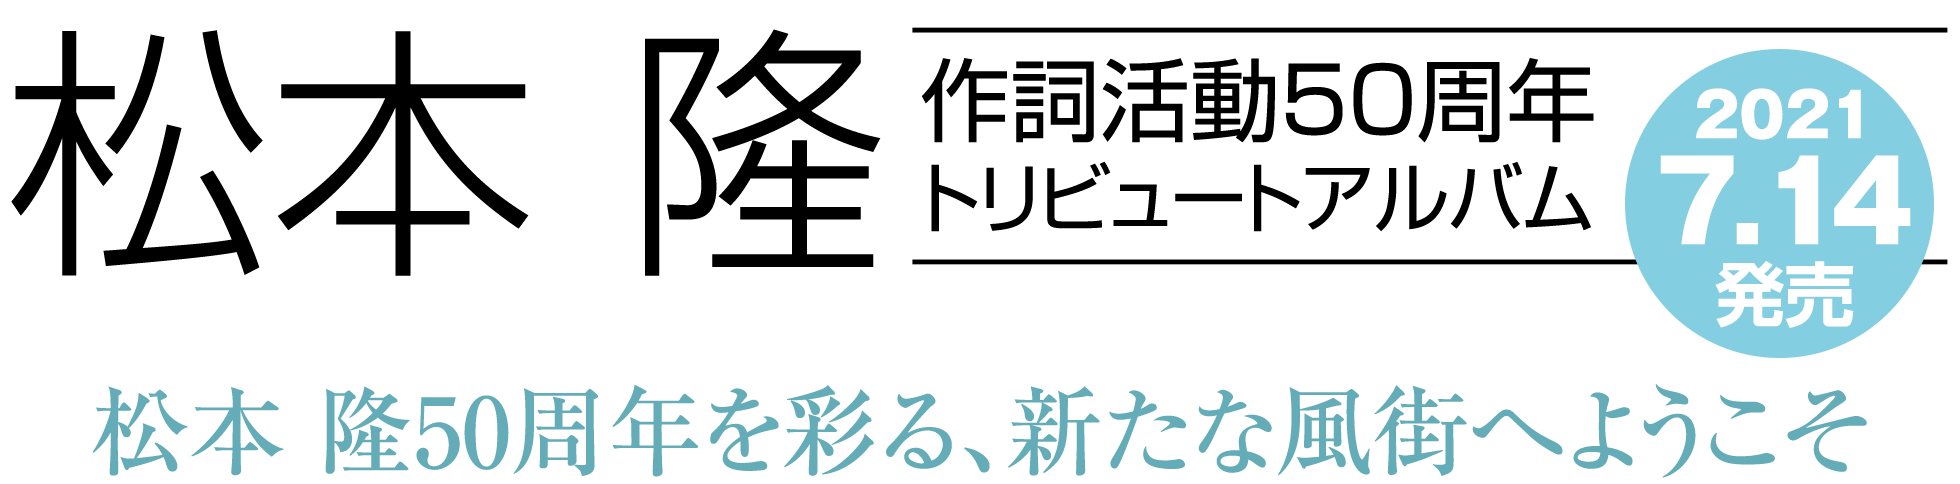 松本 隆作詞活動50周年トリビュートアルバム2021年7月14日発売